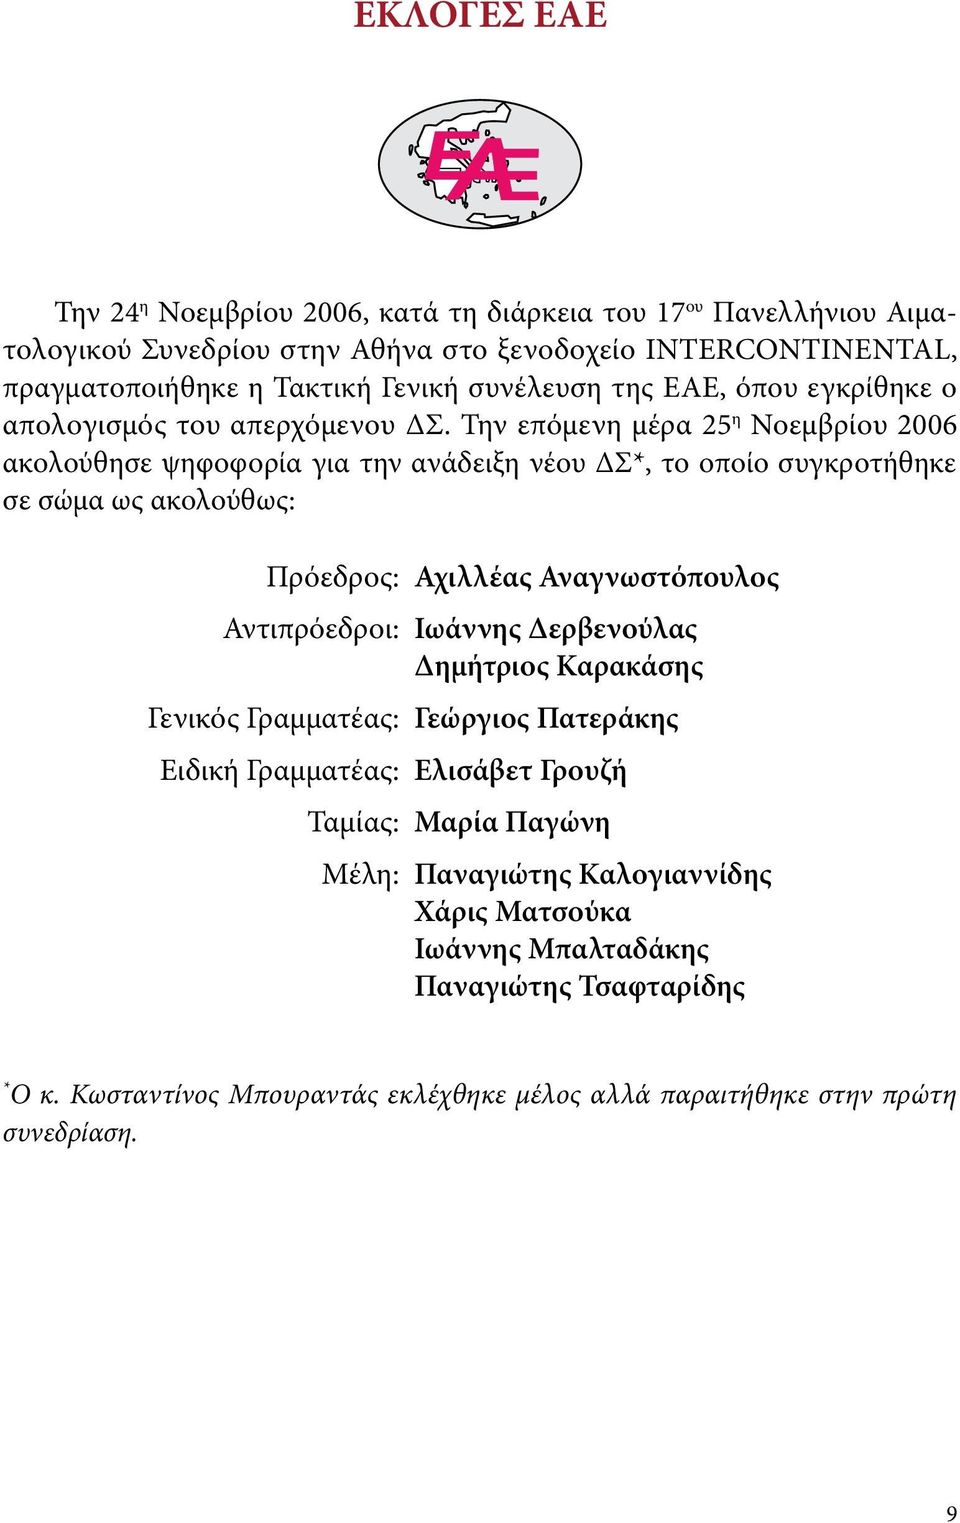 Την επόμενη μέρα 25 η Νοεμβρίου 2006 ακολούθησε ψηφοφορία για την ανάδειξη νέου ΔΣ*, το οποίο συγκροτήθηκε σε σώμα ως ακολούθως: Πρόεδρος: Αχιλλέας Αναγνωστόπουλος Αντιπρόεδροι: